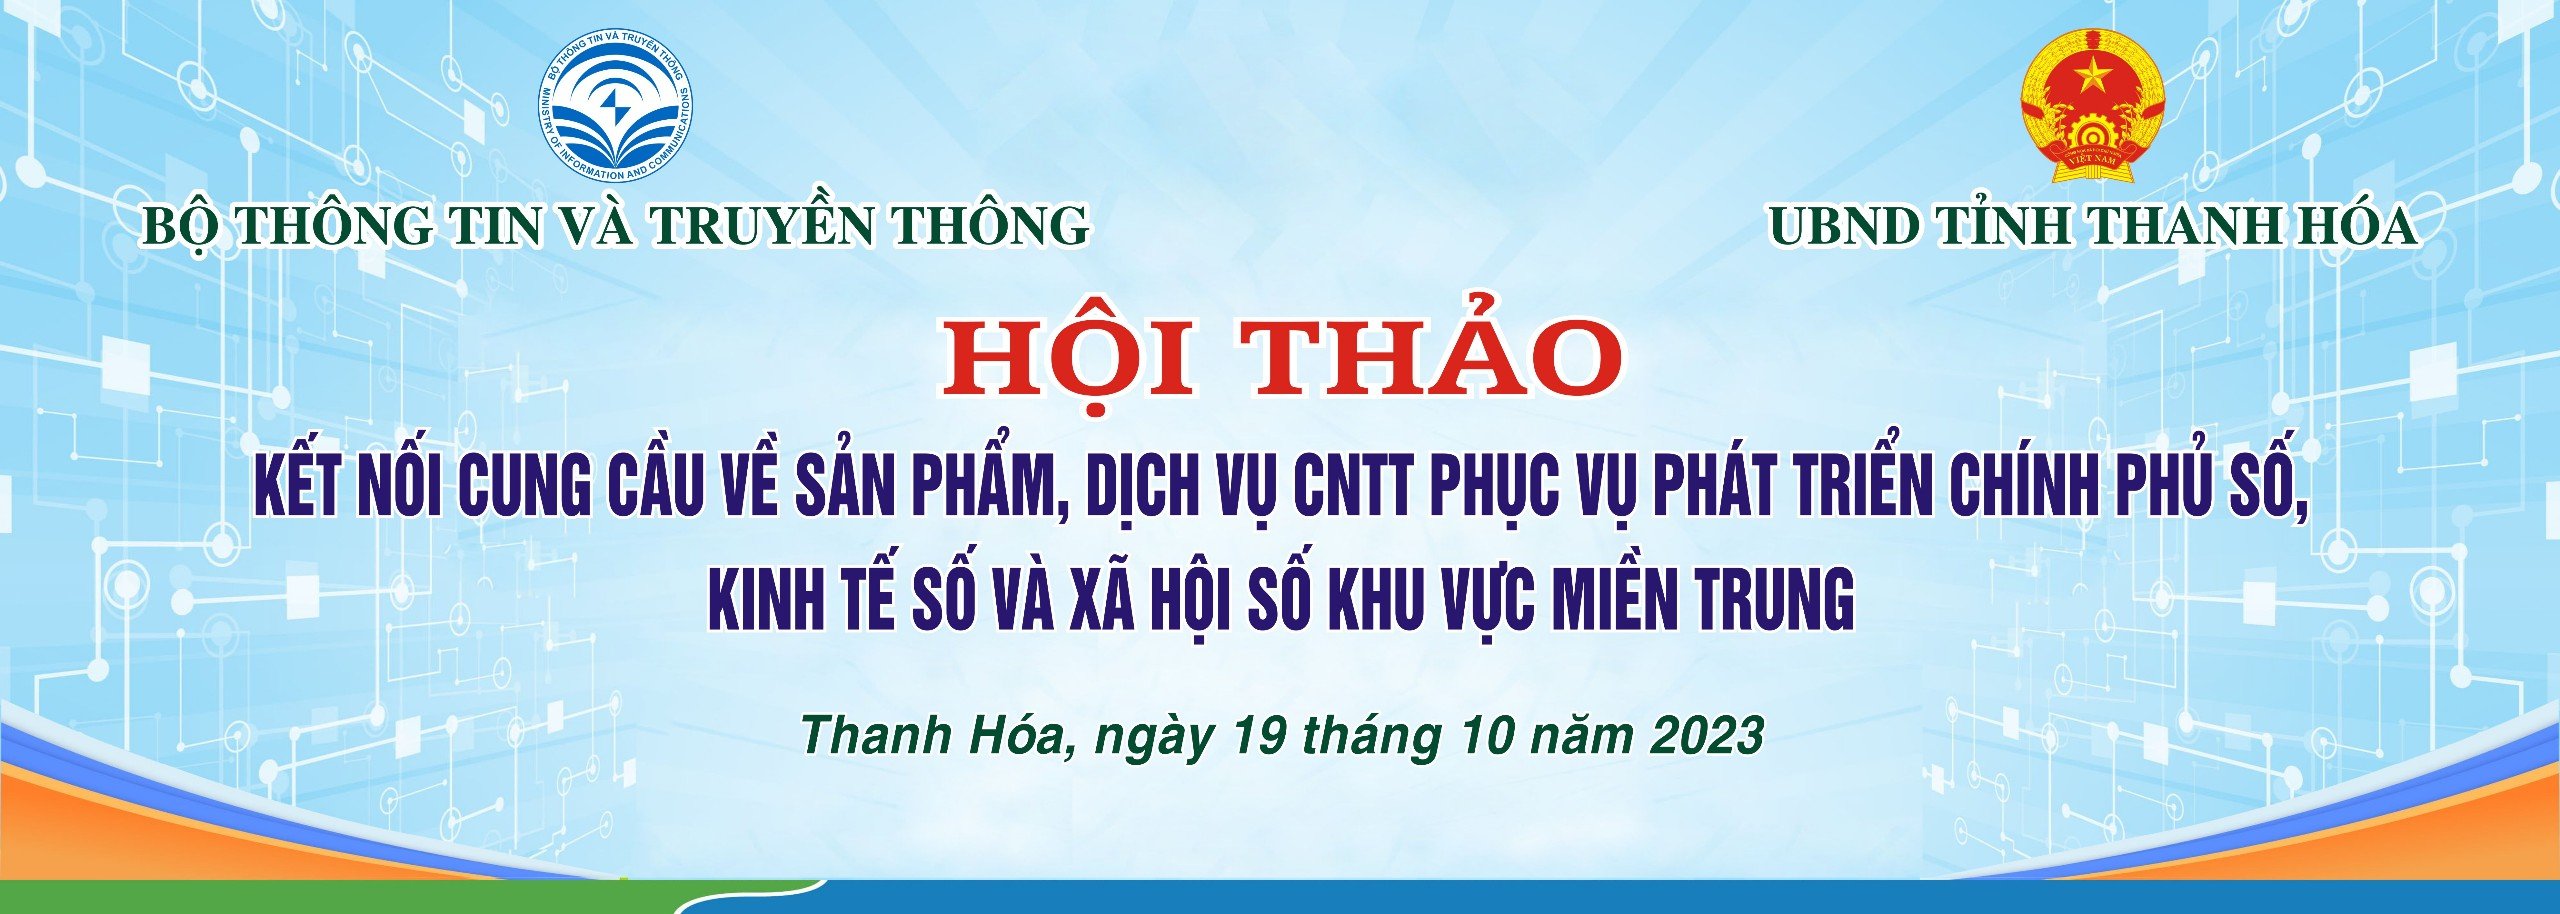 Tài liệu ngày Chuyển đổi số quốc gia năm 2023 trên địa bàn tỉnh Thanh Hóa.